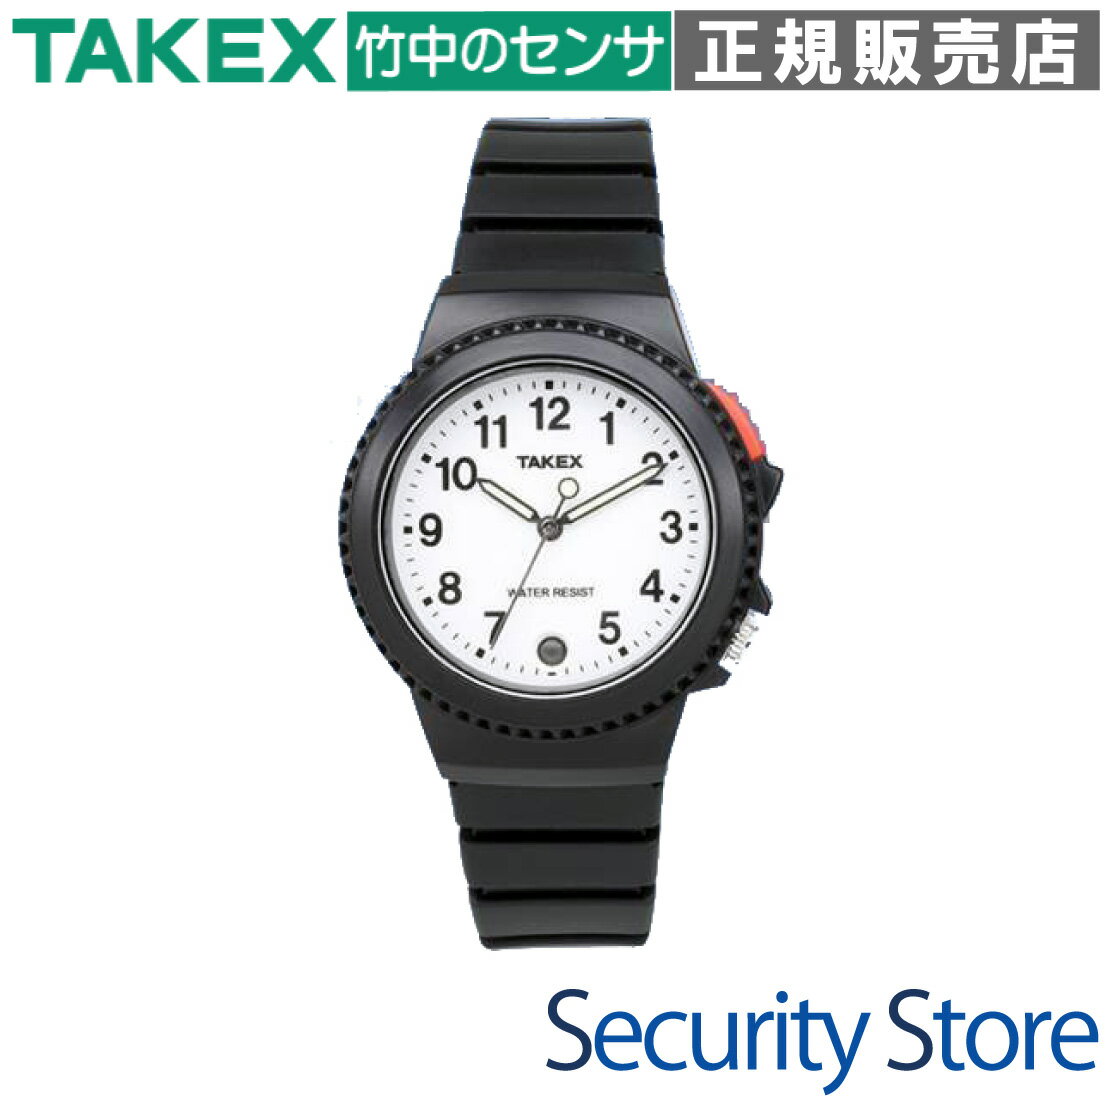 【TXF-111(W)】 腕時計送信機 4周波切替対応型 TAKEX 竹中エンジニアリング